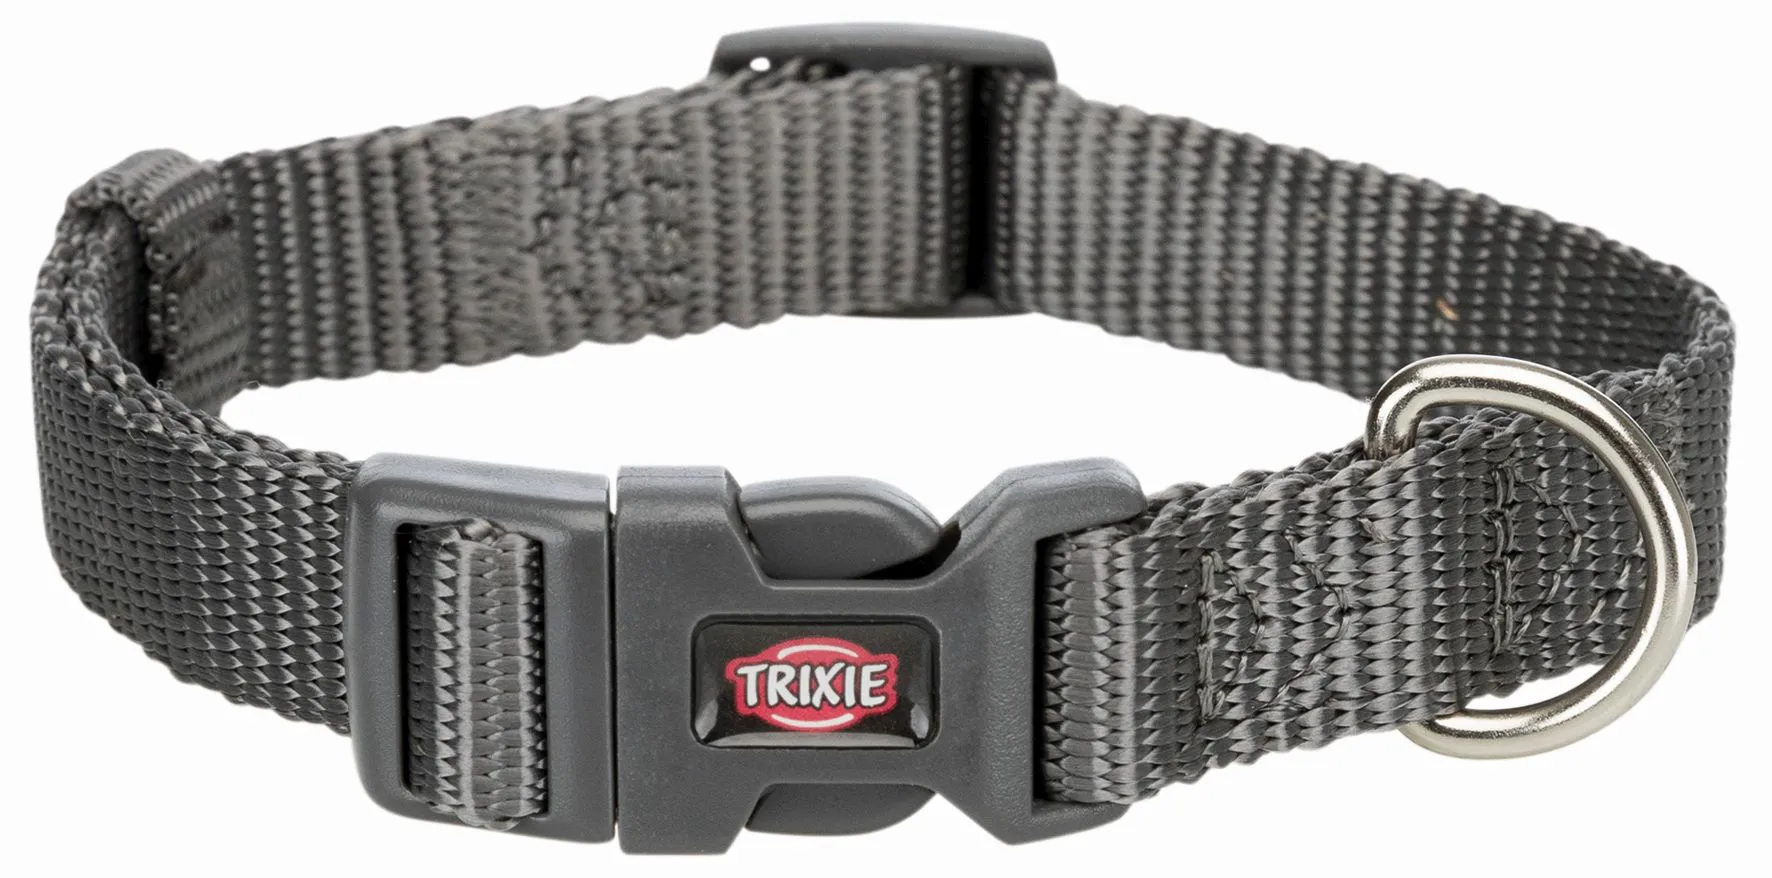  Ошейник Trixie Premium, S-M, 30-45см, 15мм, графит